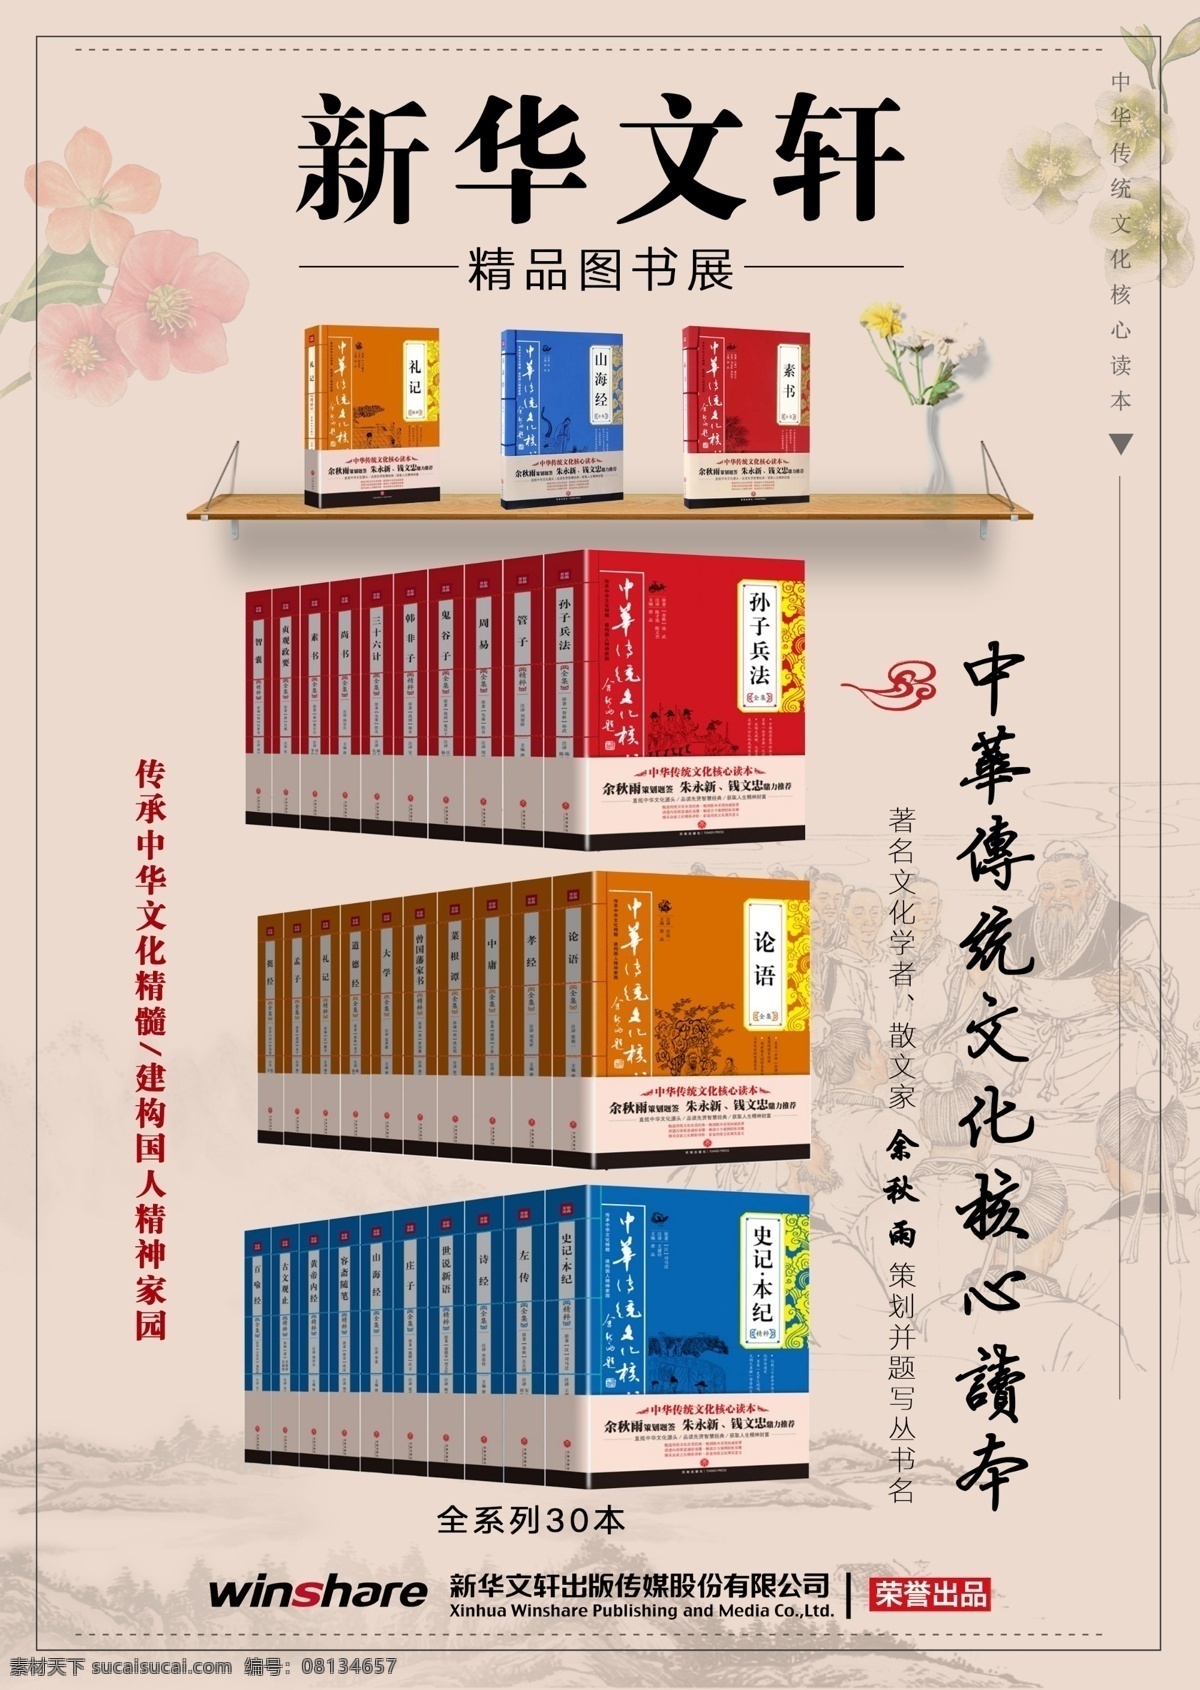 精品 图书展 海报 精品图书 中华传统文化 中国风 读书